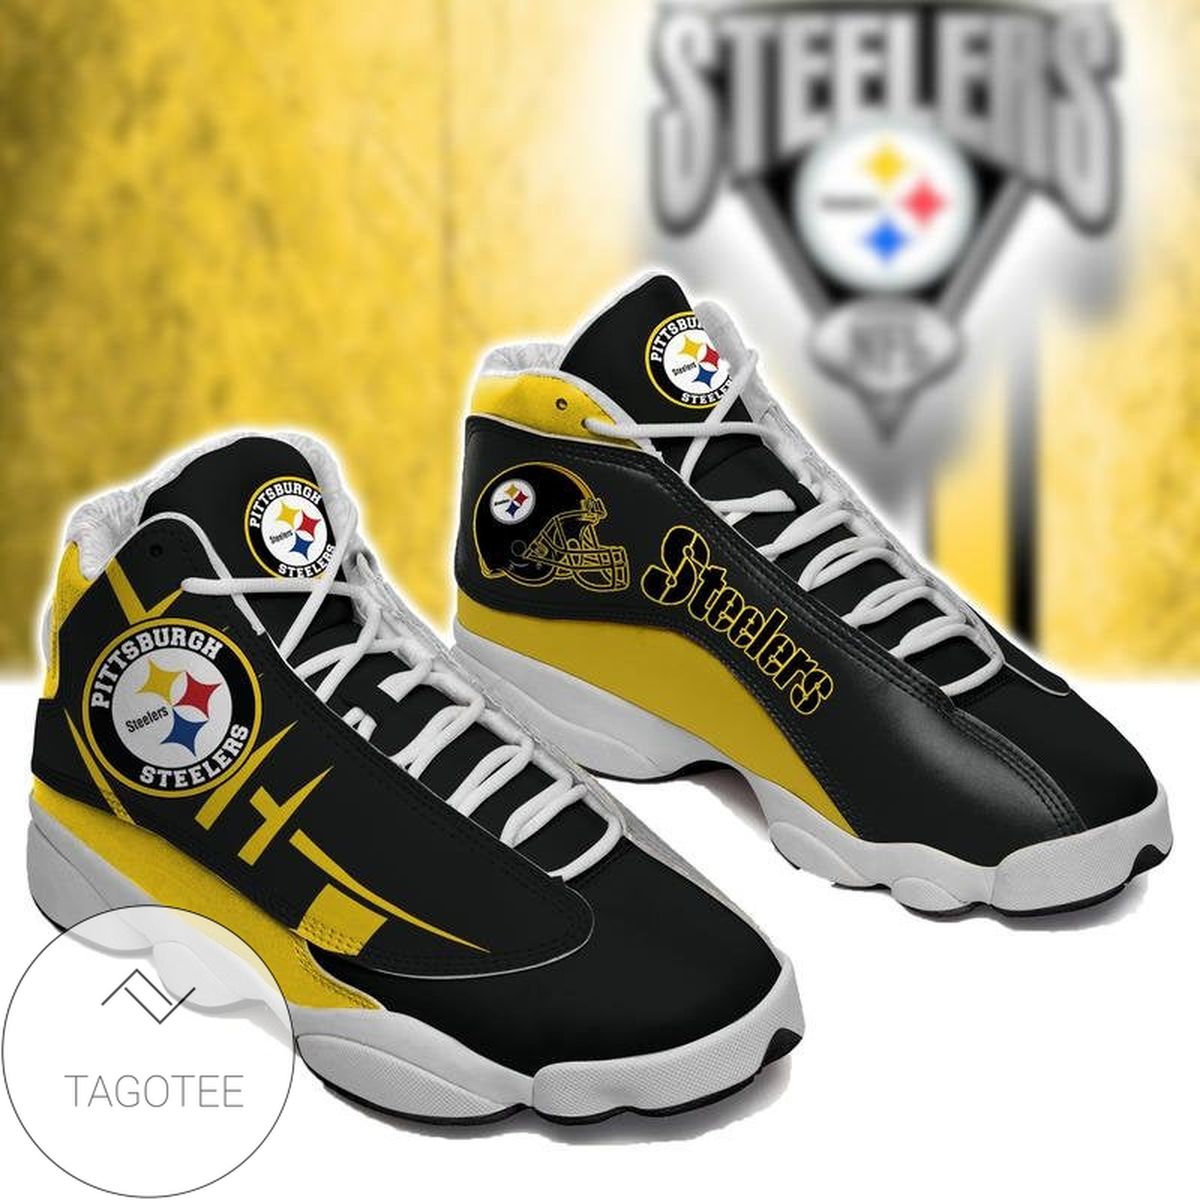 Pittsburgh Steelers Air Jordan 13 Shoes Sneakers